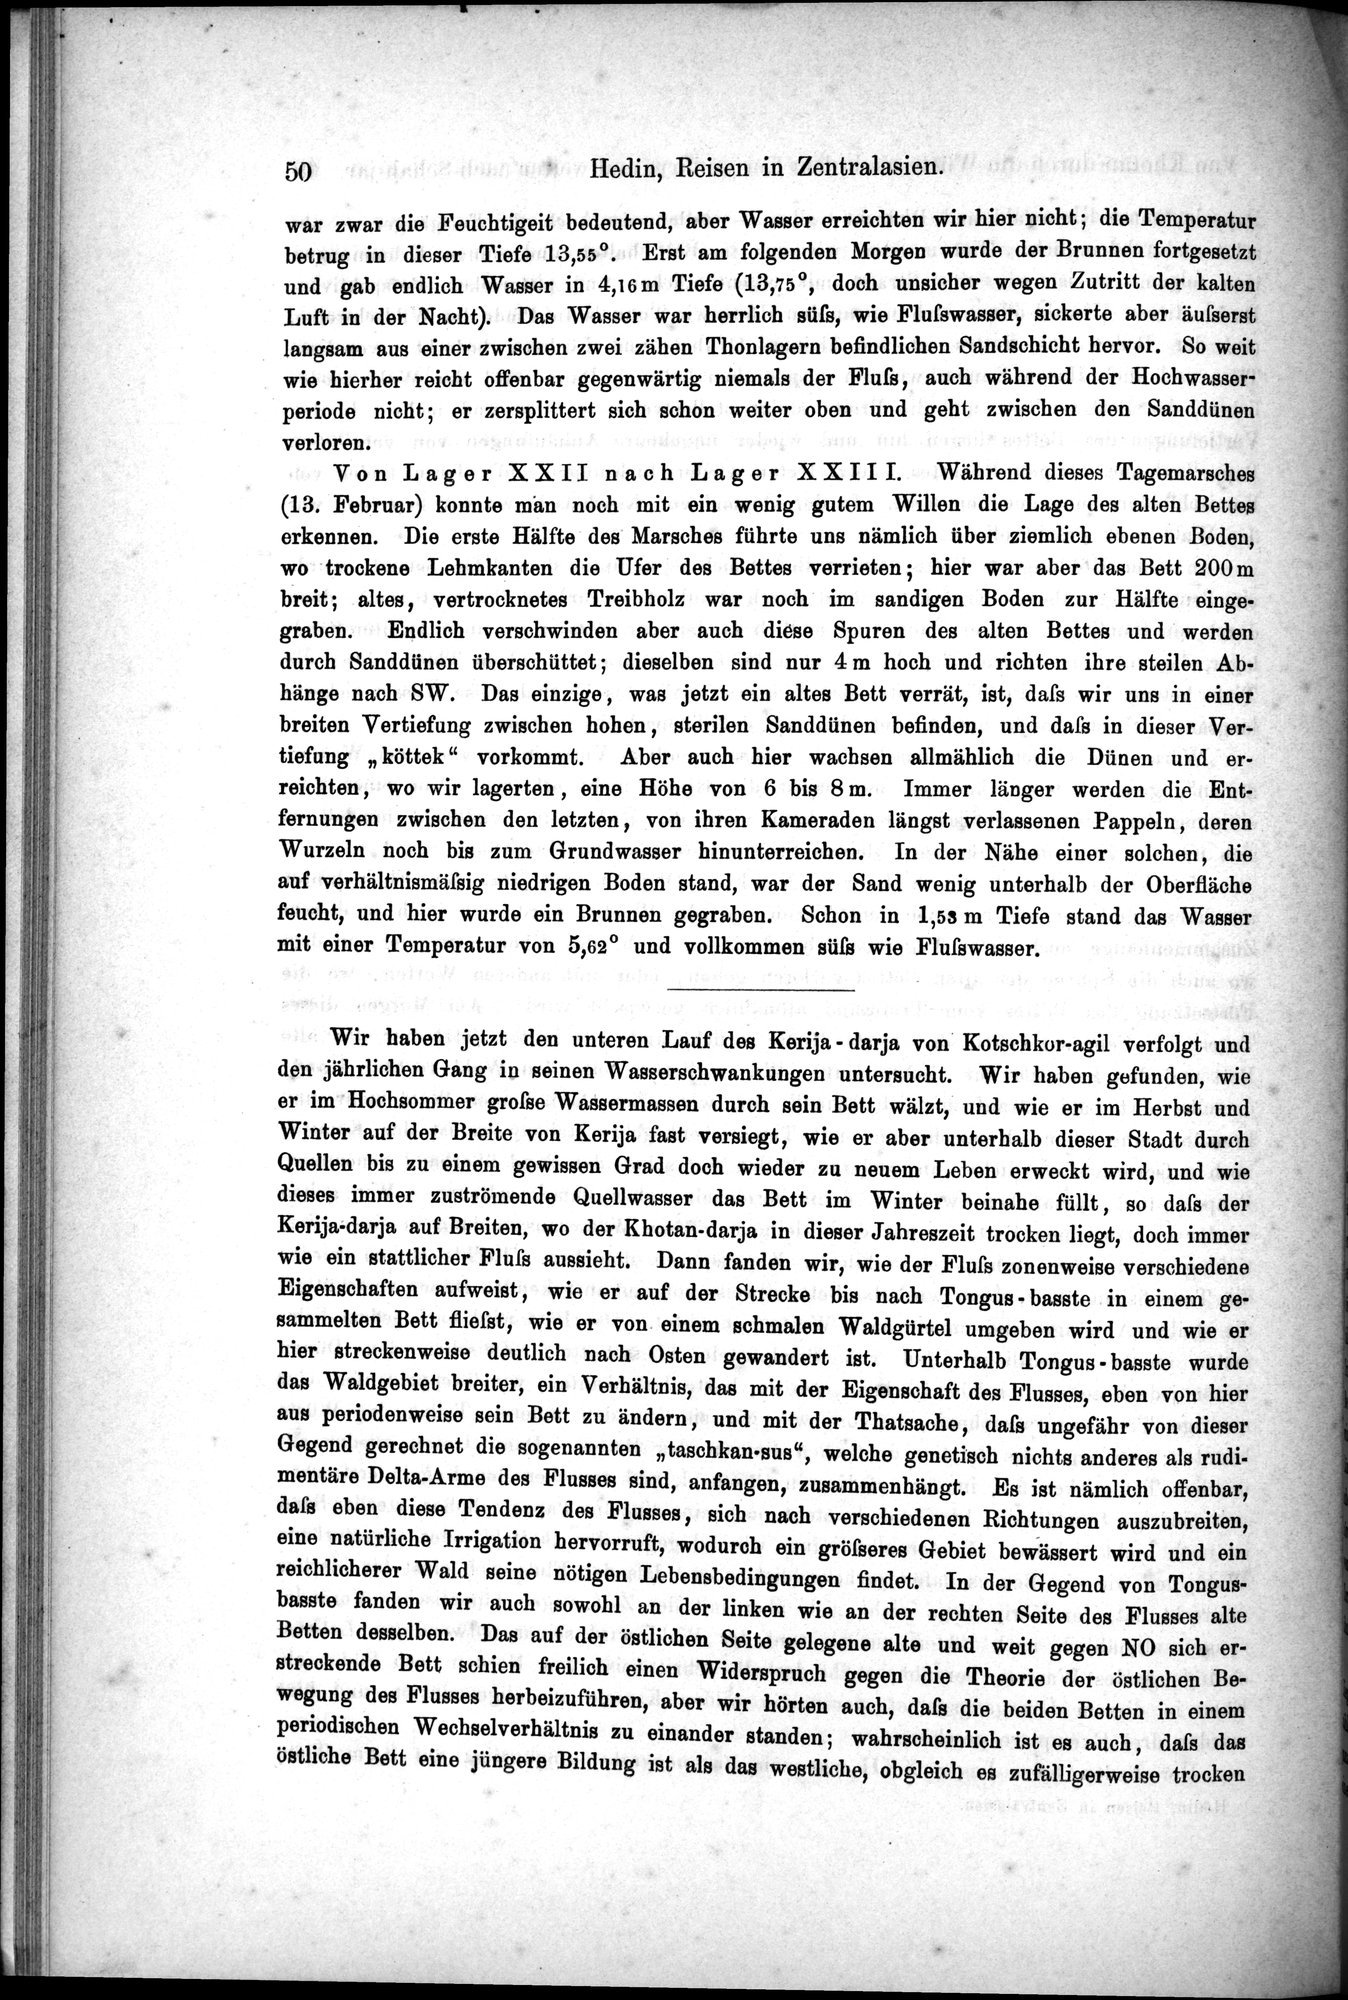 Die Geographische-Wissenschaftlichen Ergebnisse meiner Reisen in Zentralasien, 1894-1897 : vol.1 / Page 62 (Grayscale High Resolution Image)